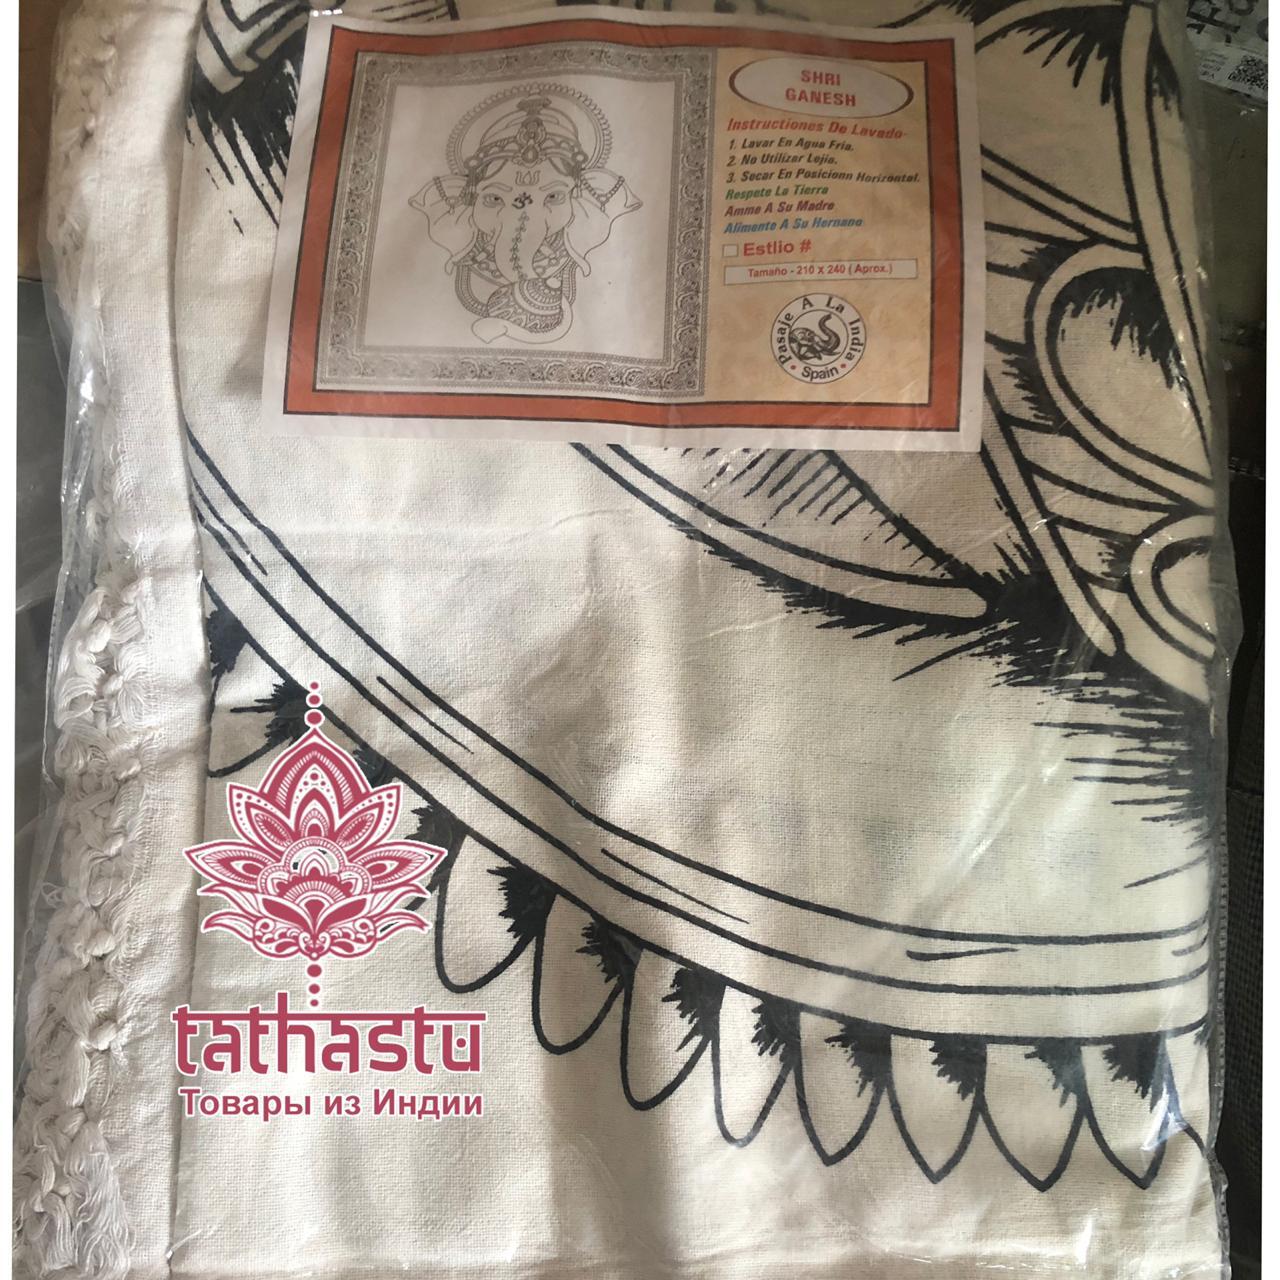 Tathastu Индийское хлопковое двуспальное покрывало Ганеш. Tathastu товары и индии